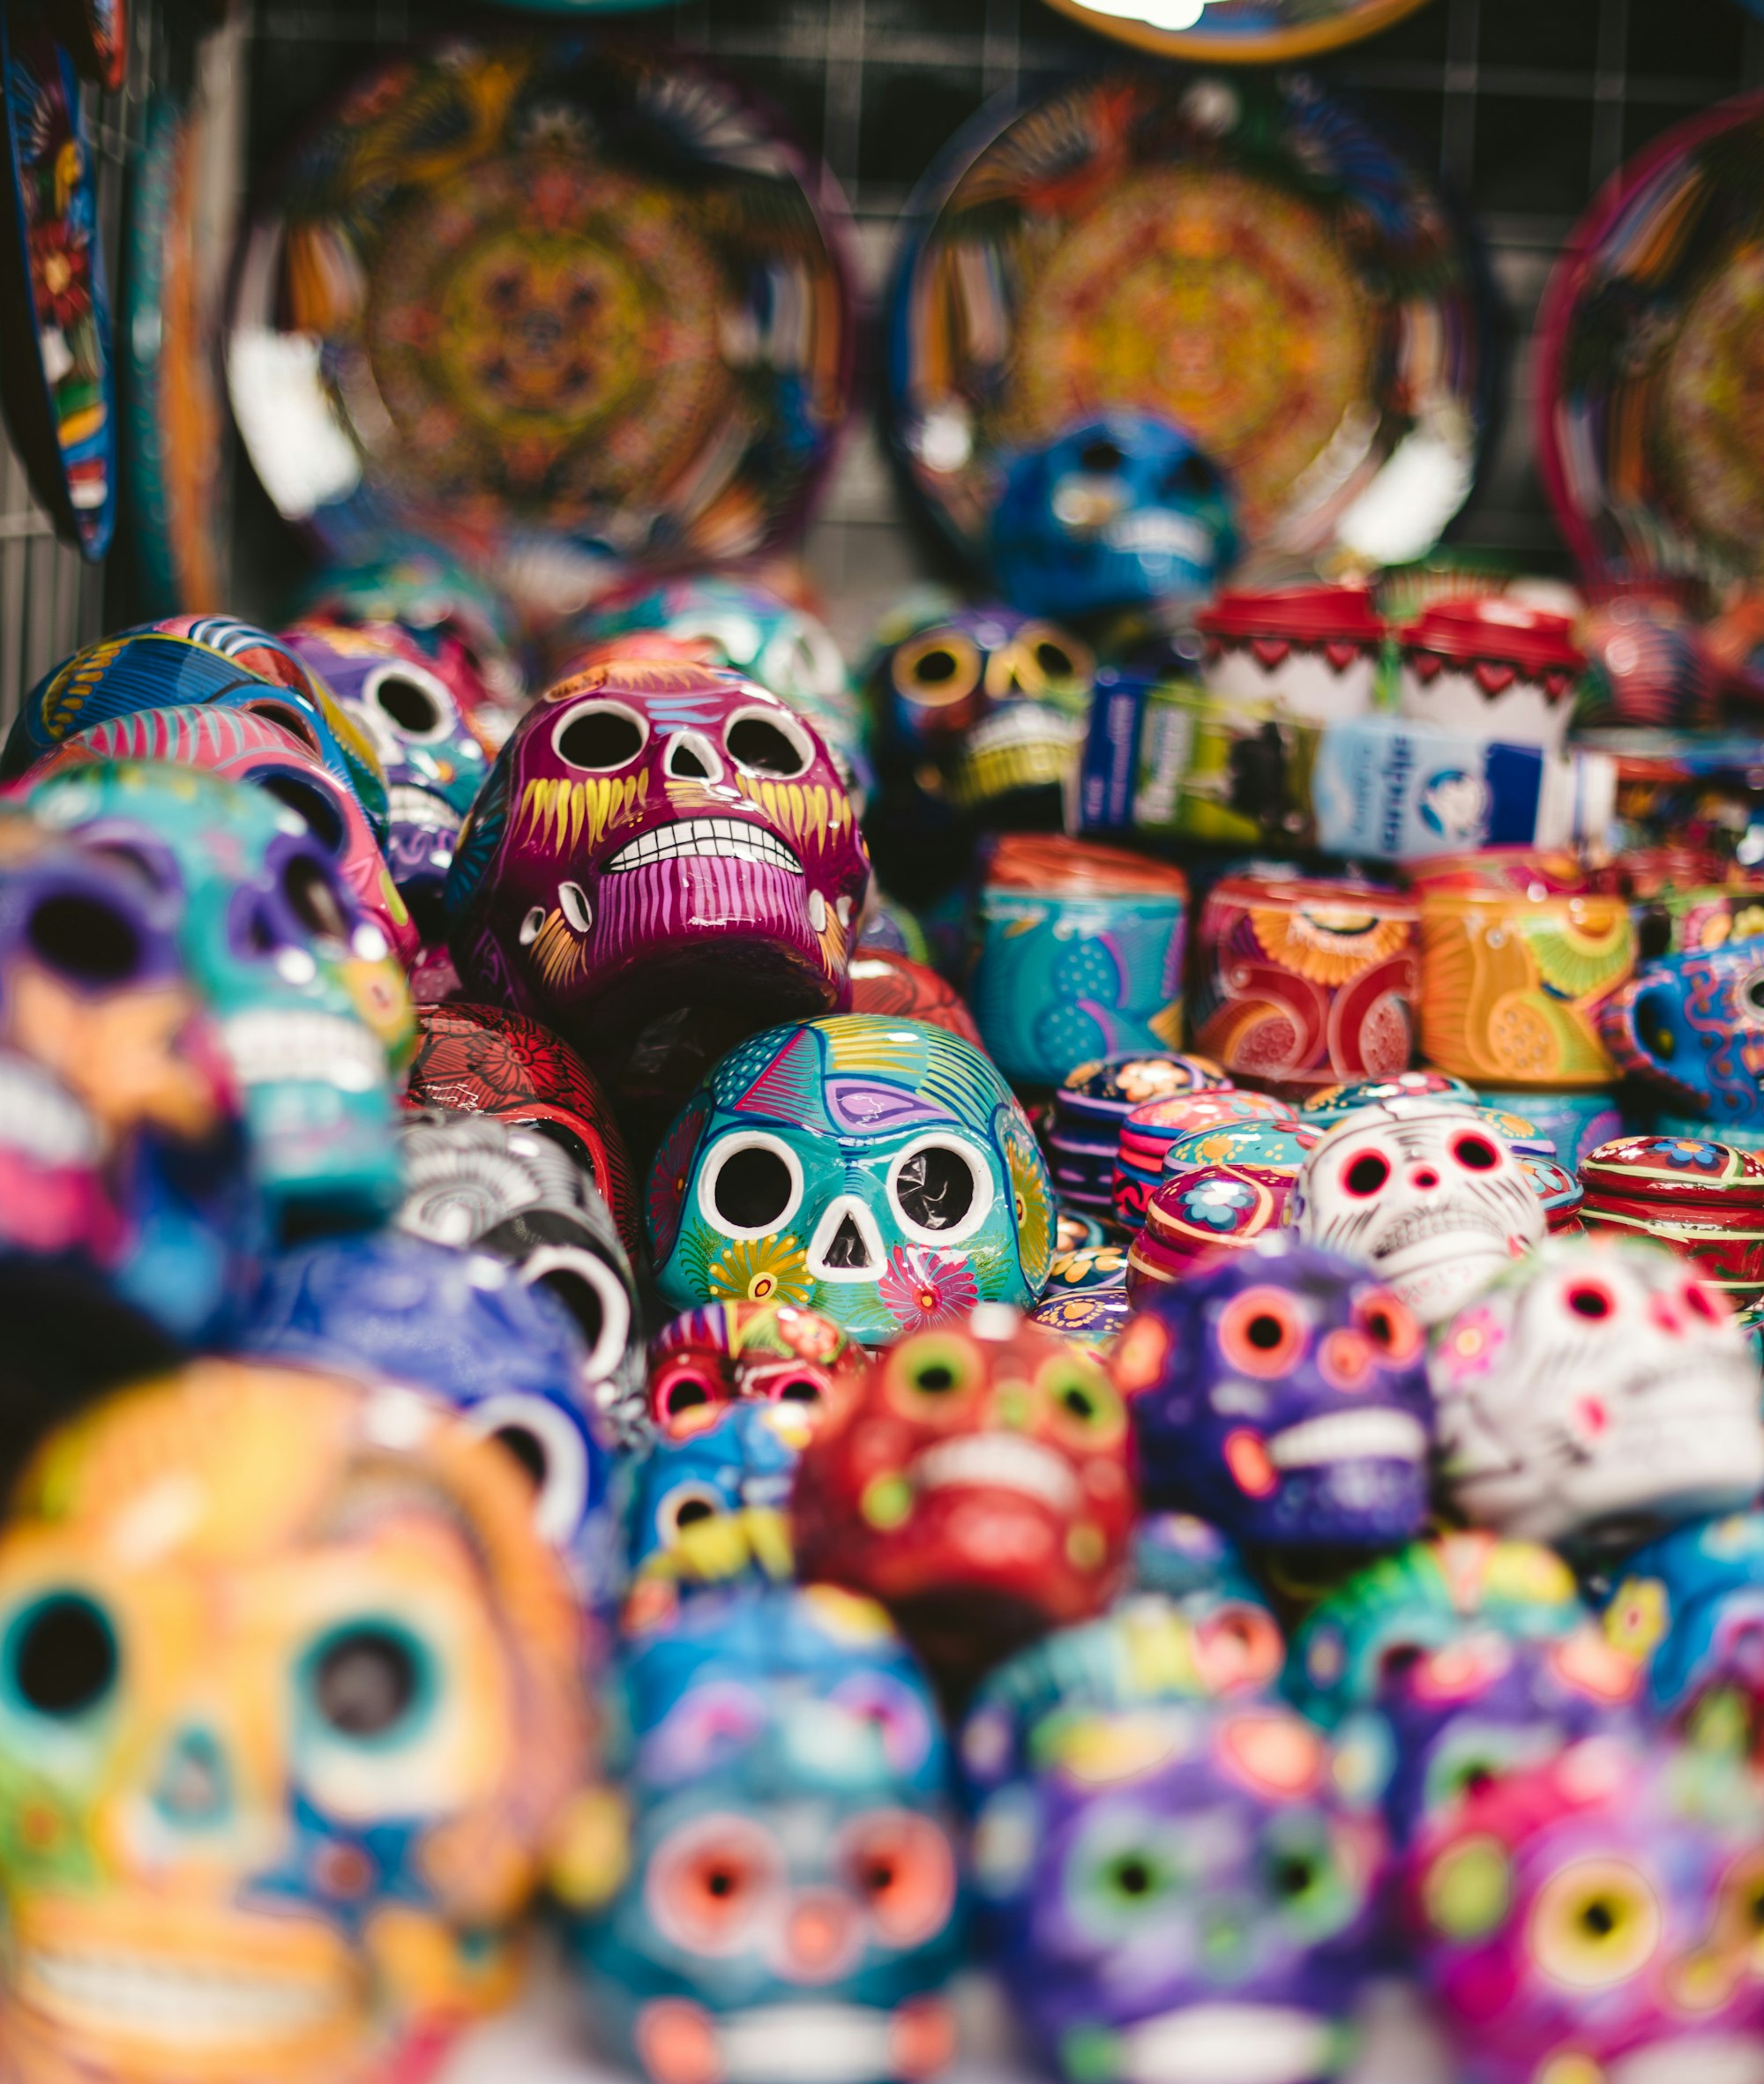 Colorful skulls for sale in Mexico City during Día de los Muertos.